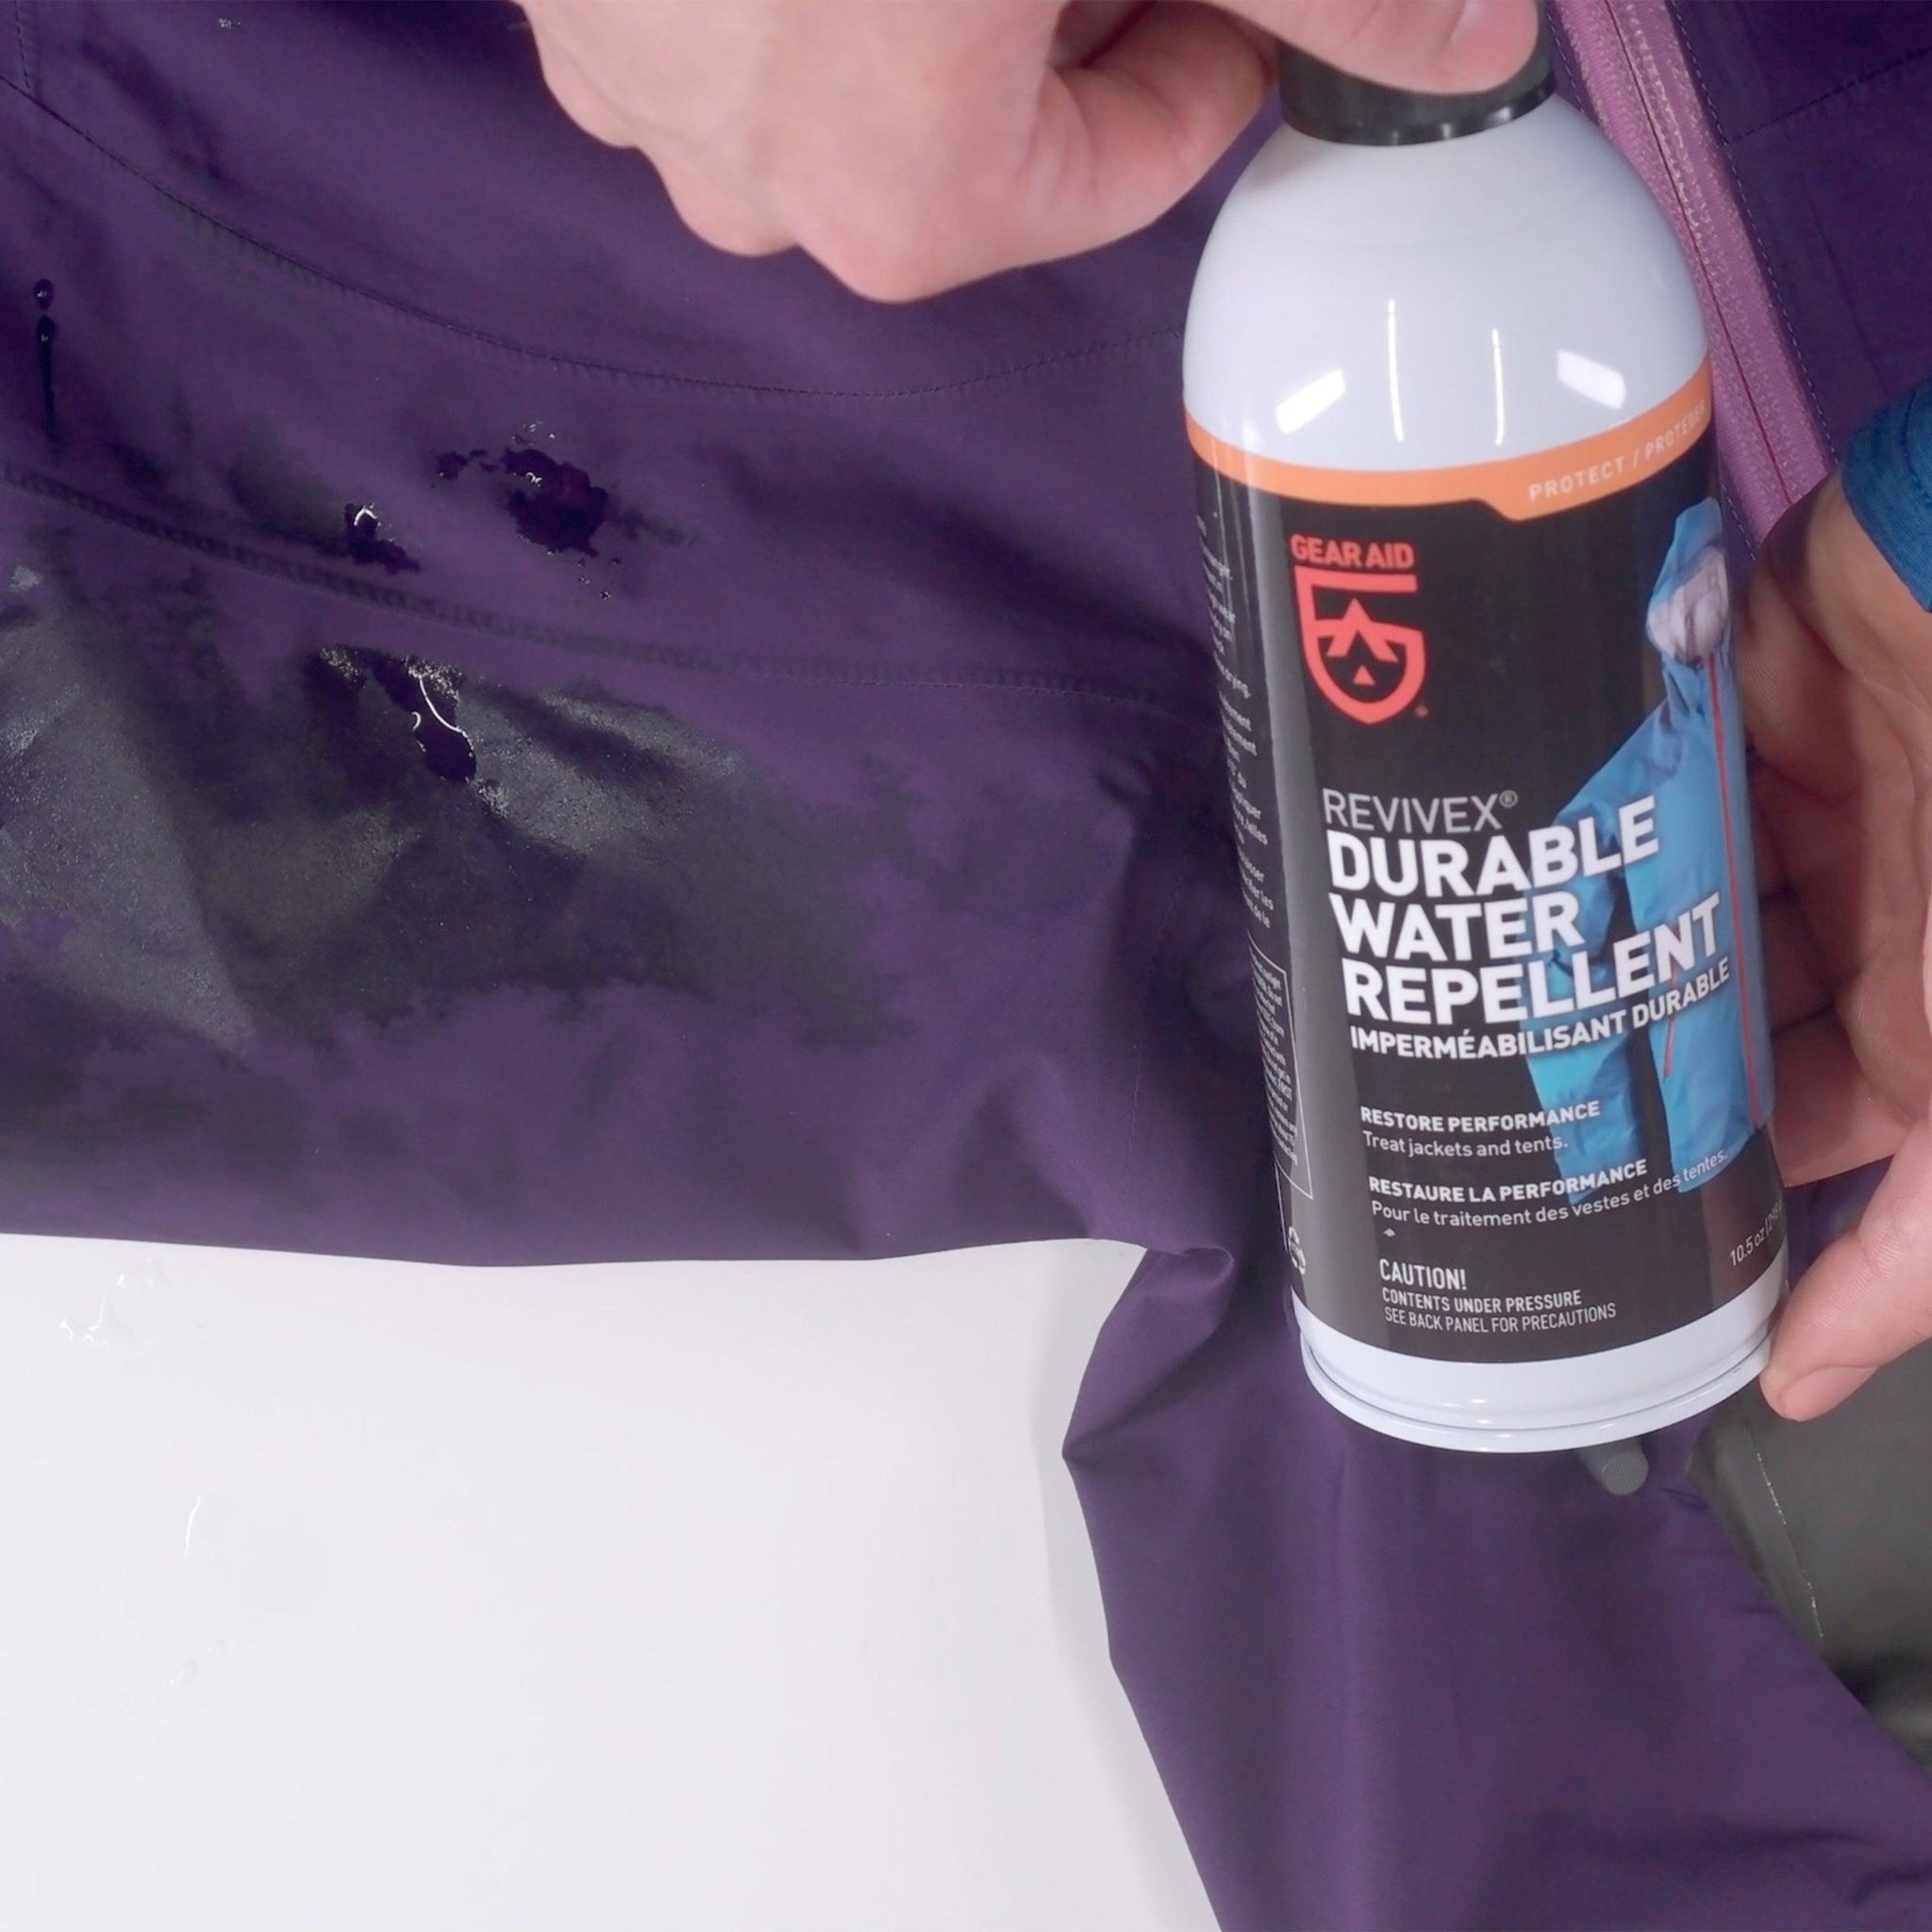 Buy Gear Aid Revivex Durable Water Repellent Spray 10.5oz online